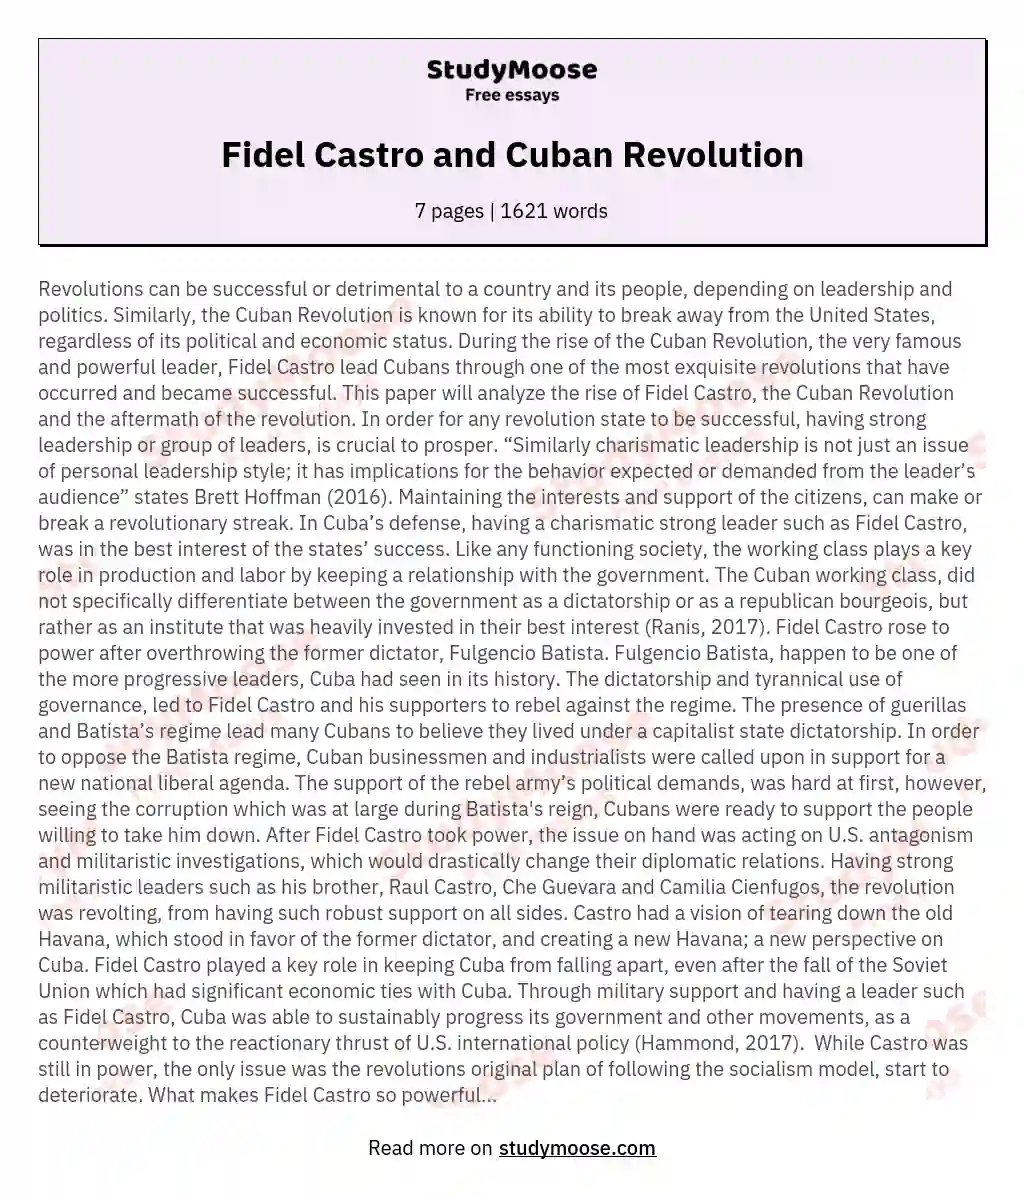 Fidel Castro and Cuban Revolution